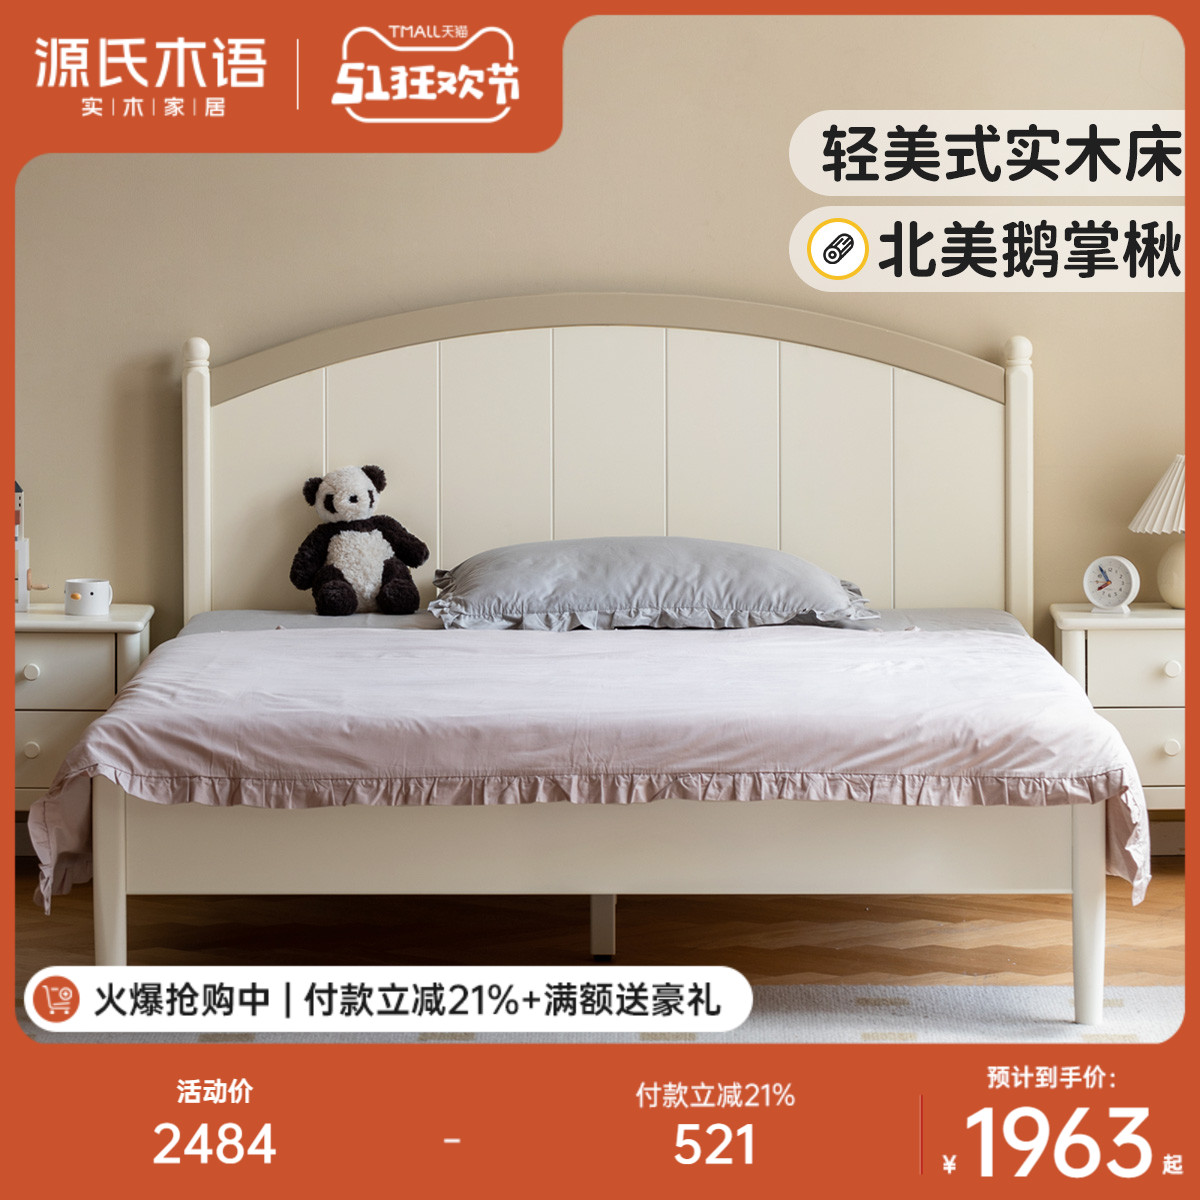 新客减源氏木语儿童床白色美式实木床奶油风卧室家用小床男孩女孩